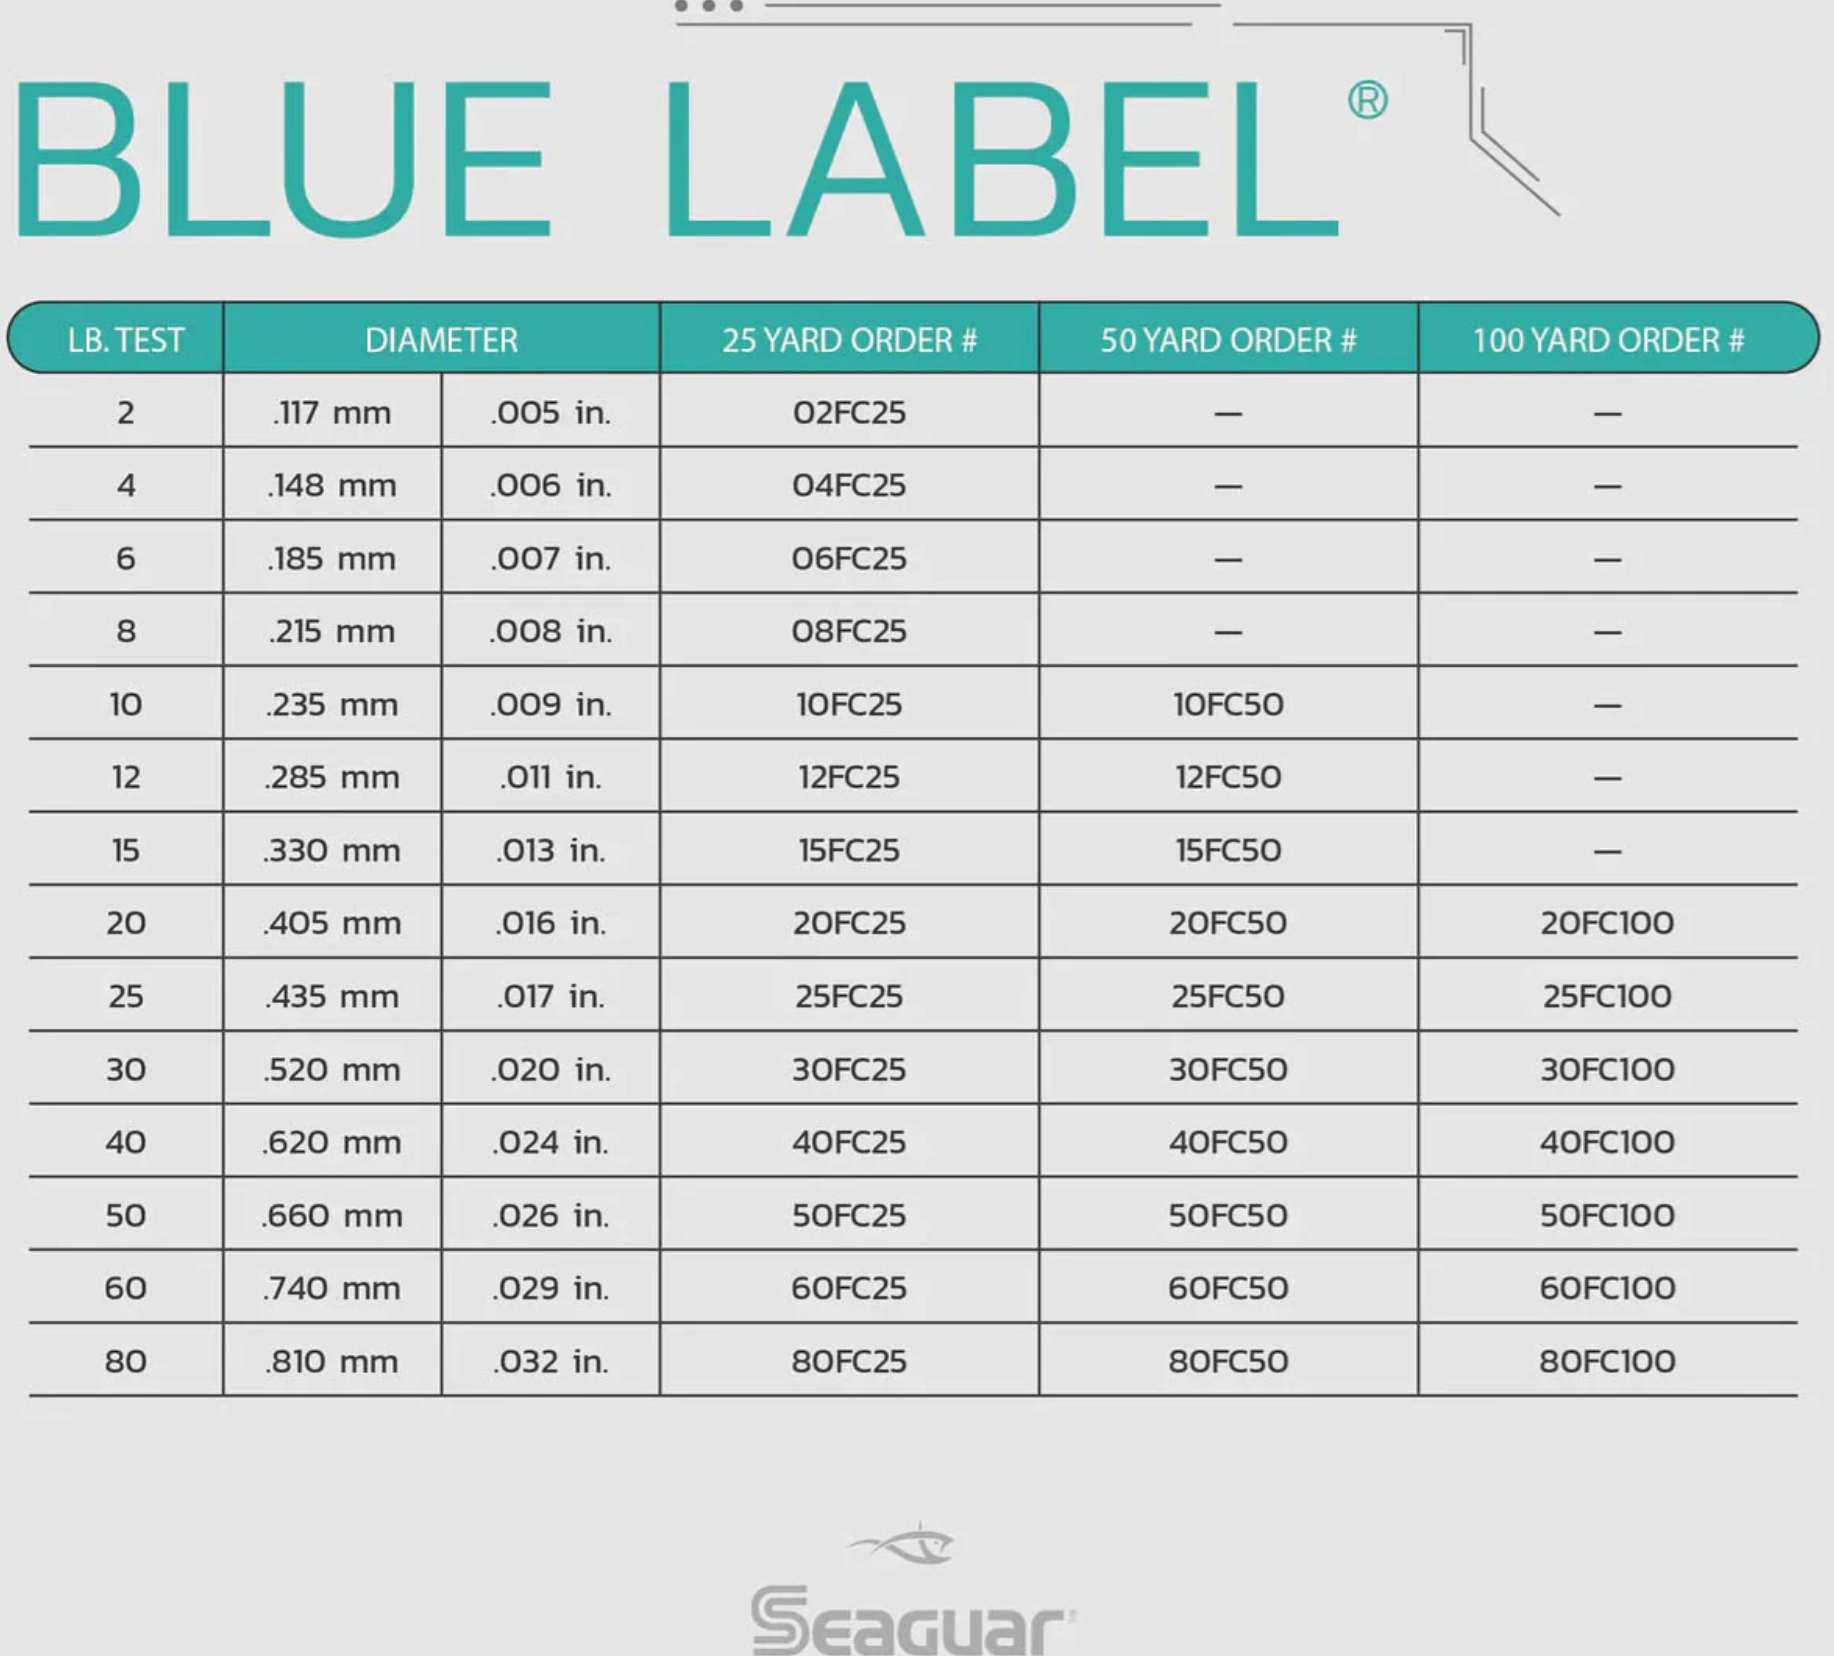 Seaguar Blue Label Big Game Fluorocarbon Leader